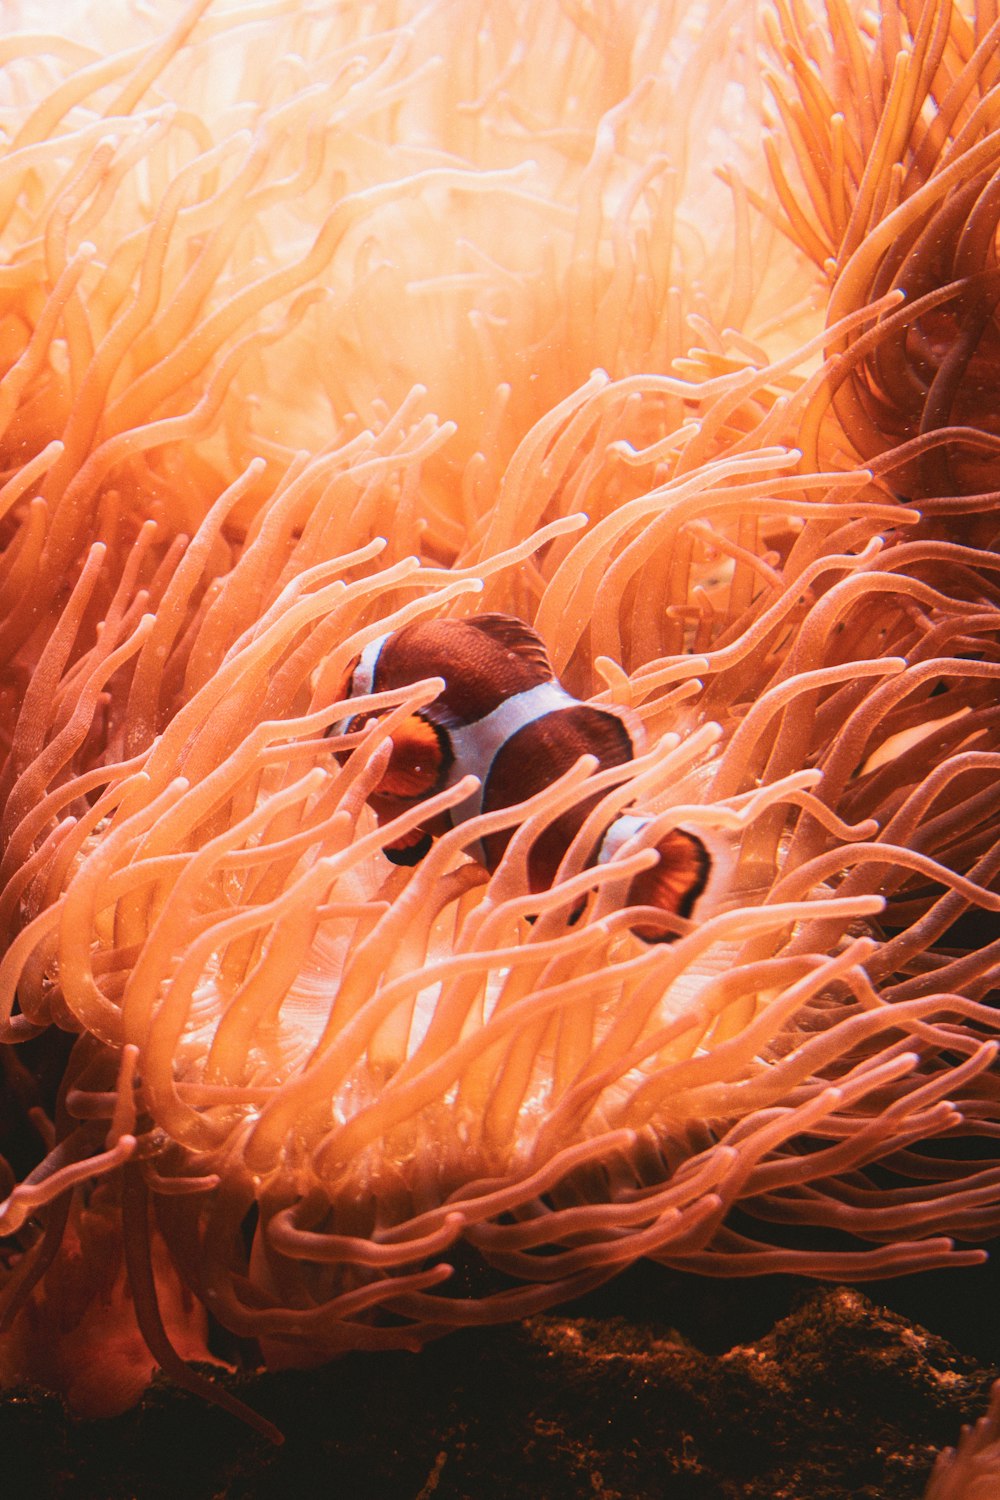 anemone anemone anemone anemone anemone an